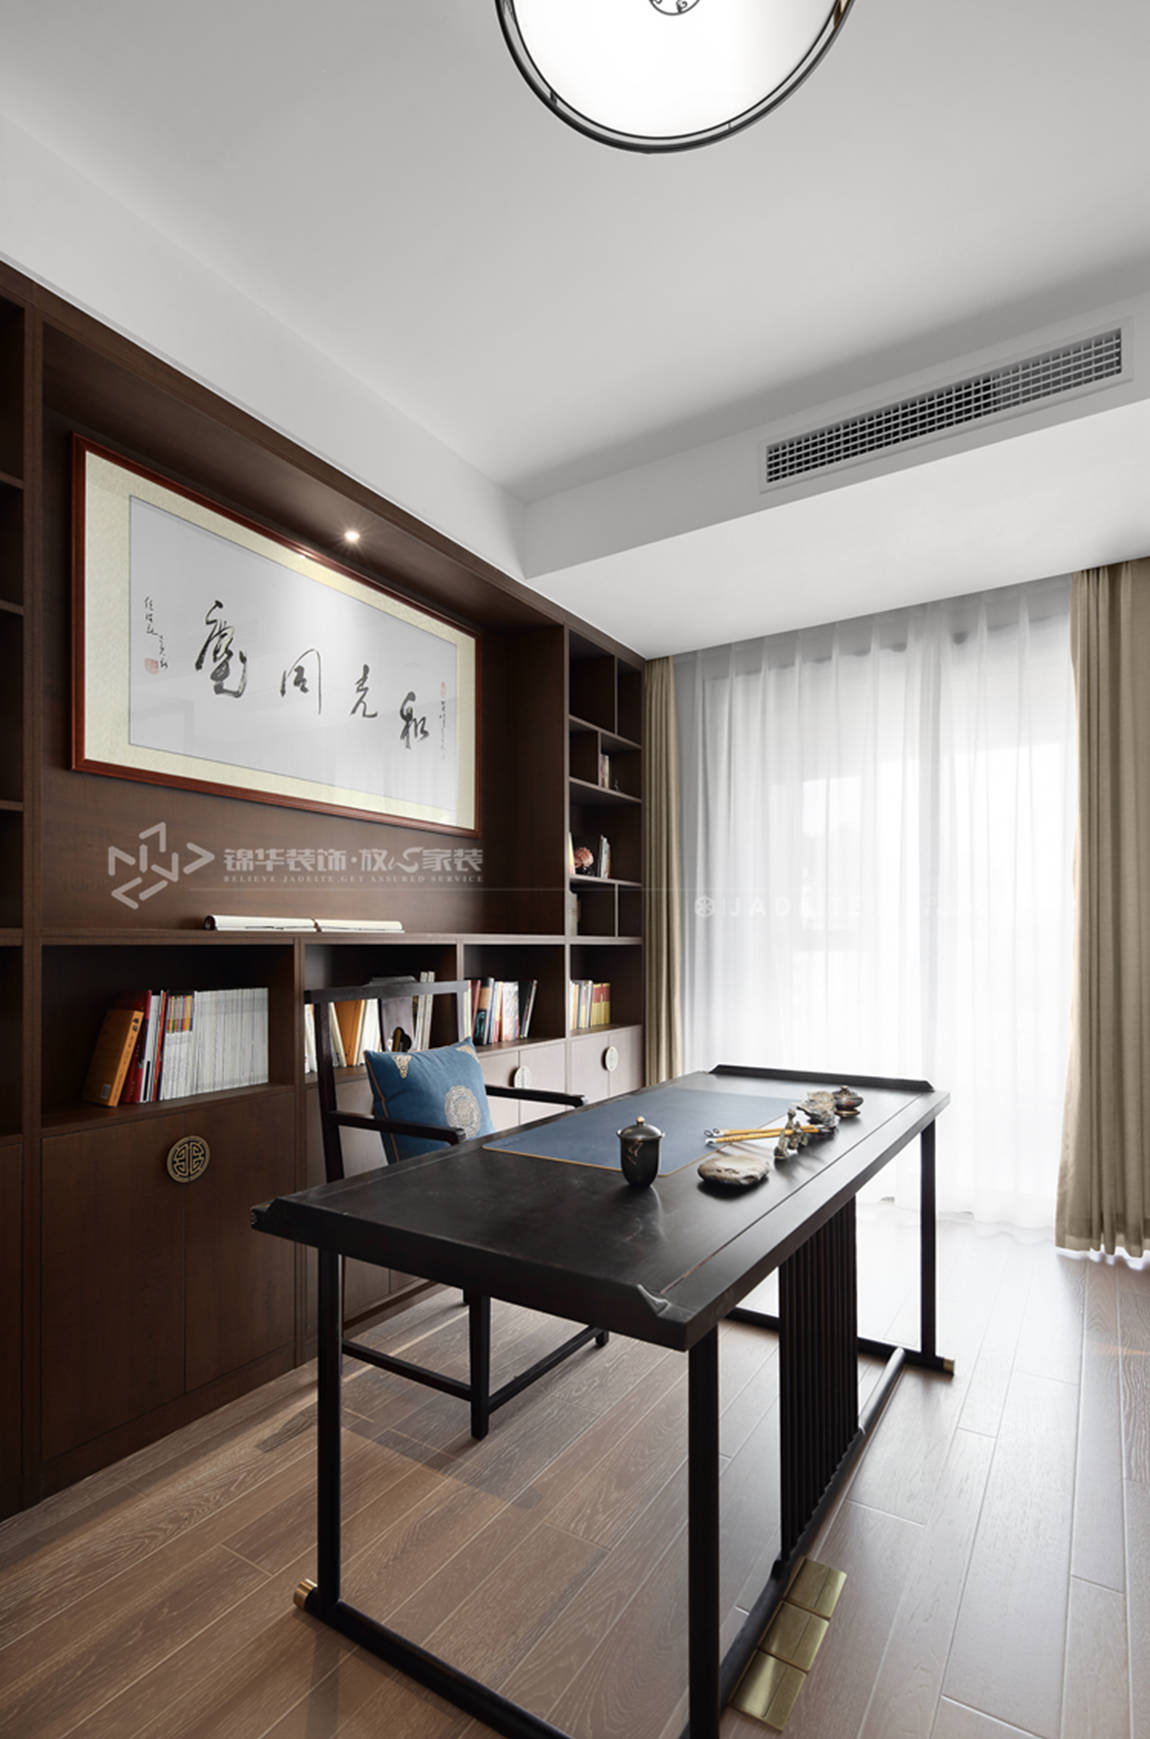 新中式-明珠城香湖苑-210平-四室两厅-书房-装修效果实景图 